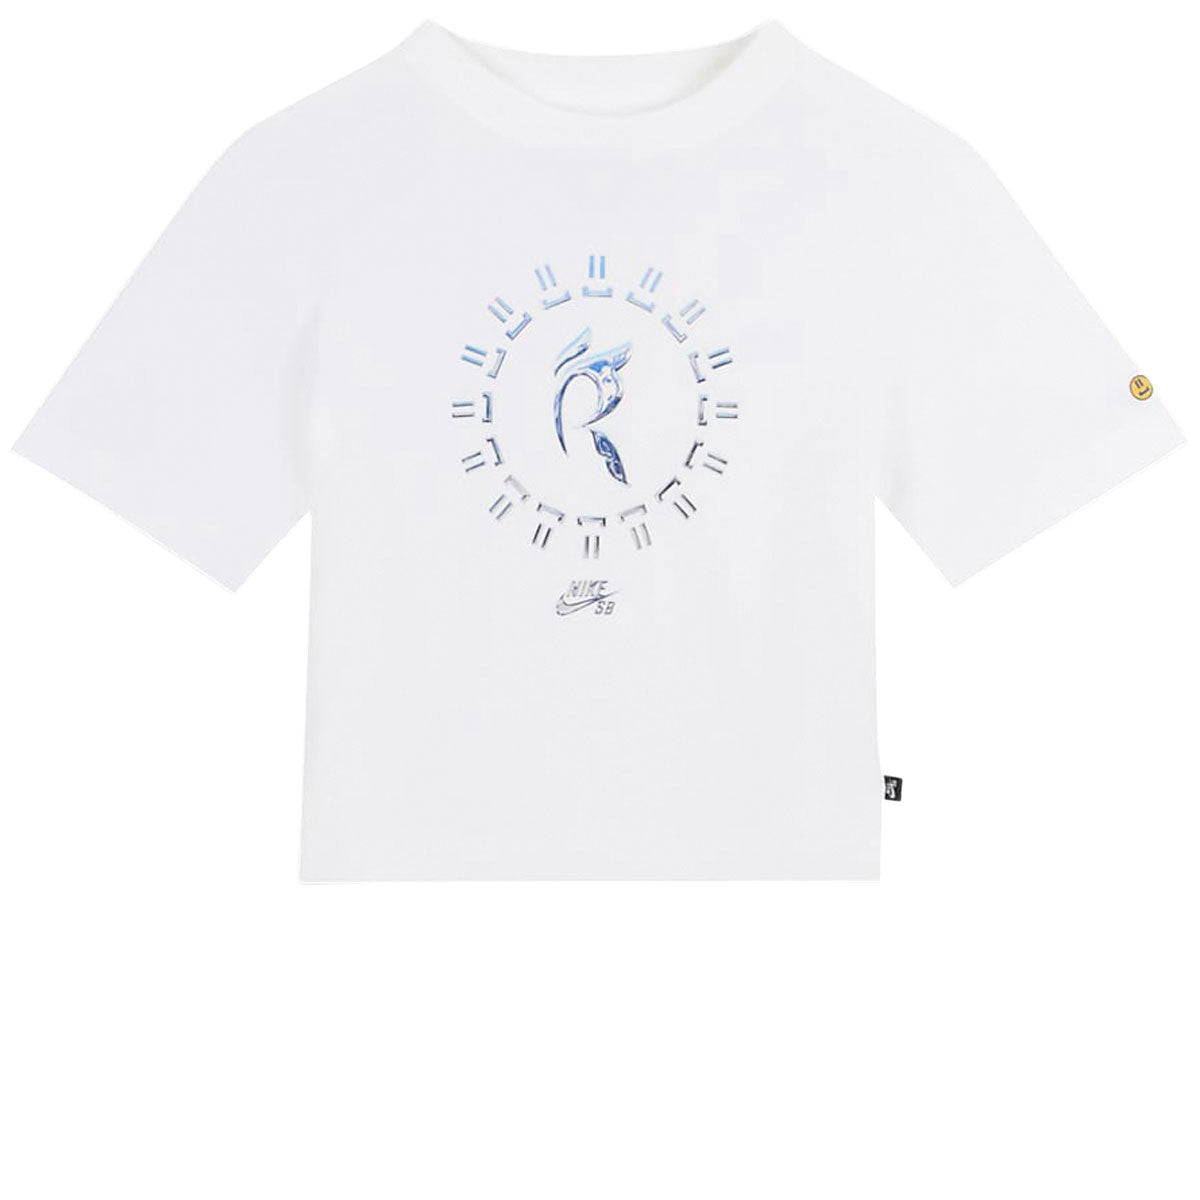 Nike SB Womens x Rayssa Leal T-Shirt - White image 1